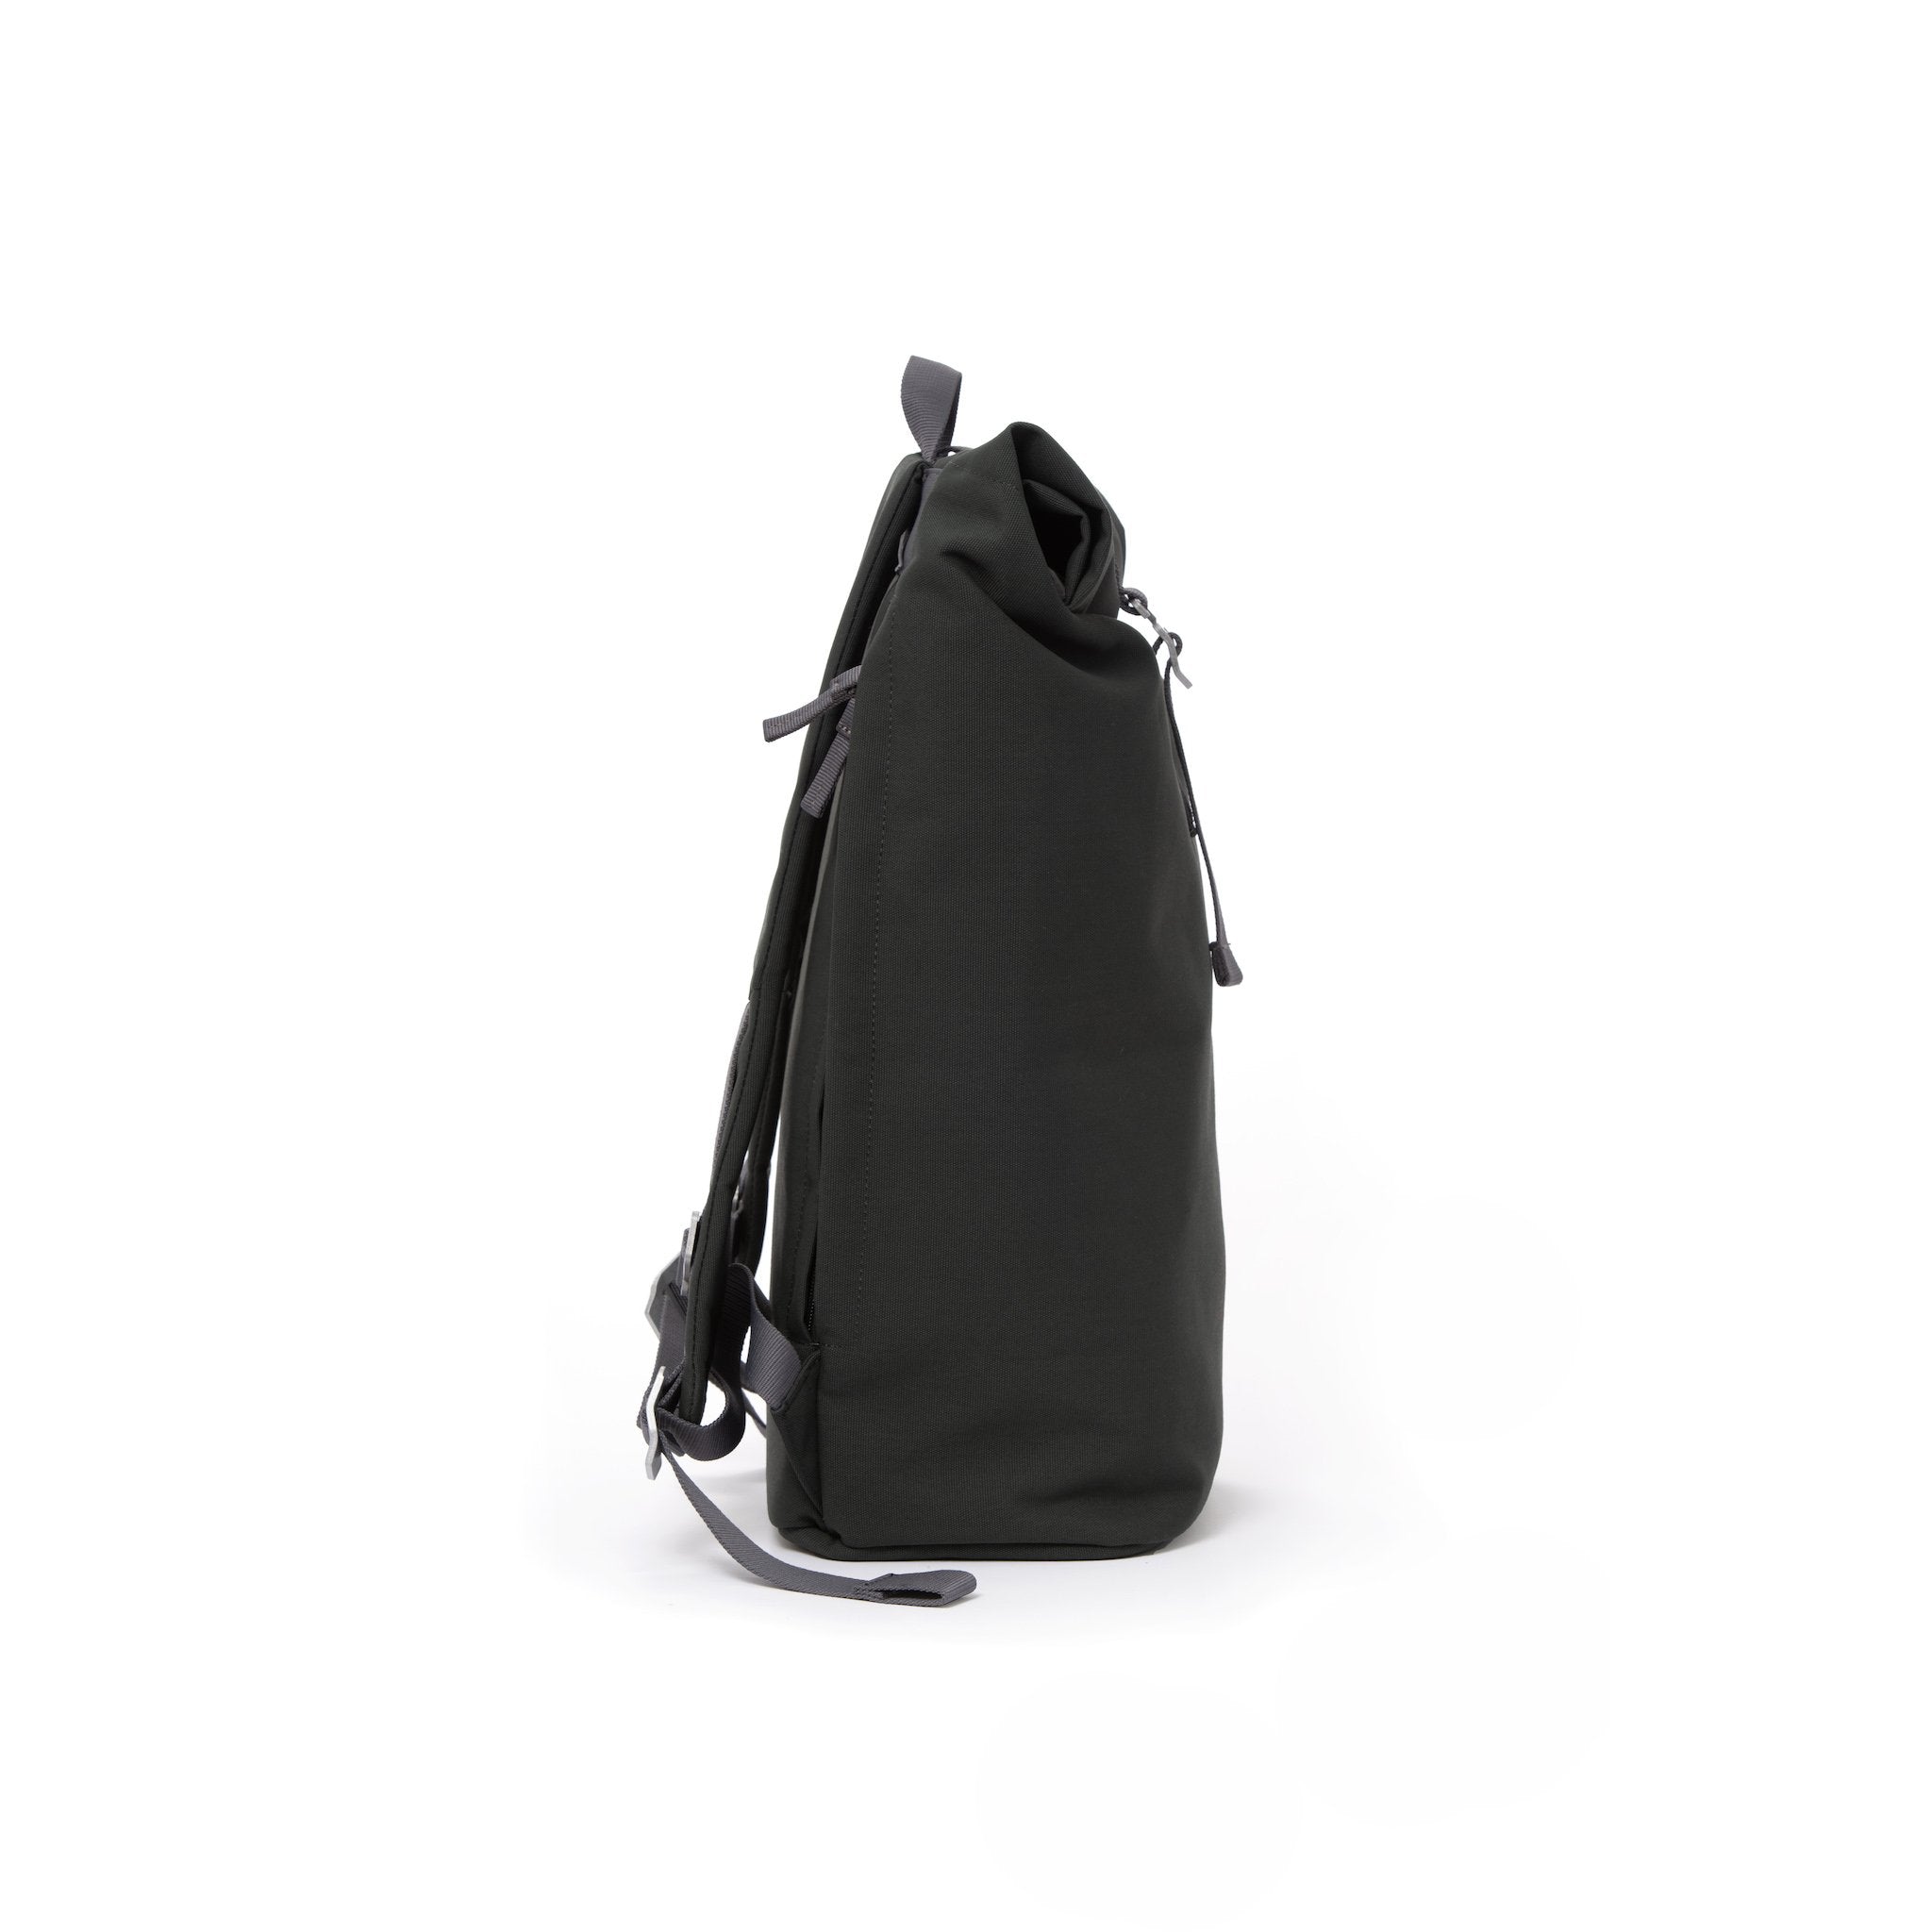 Grey waterproof canvas men’s rolltop backpack.